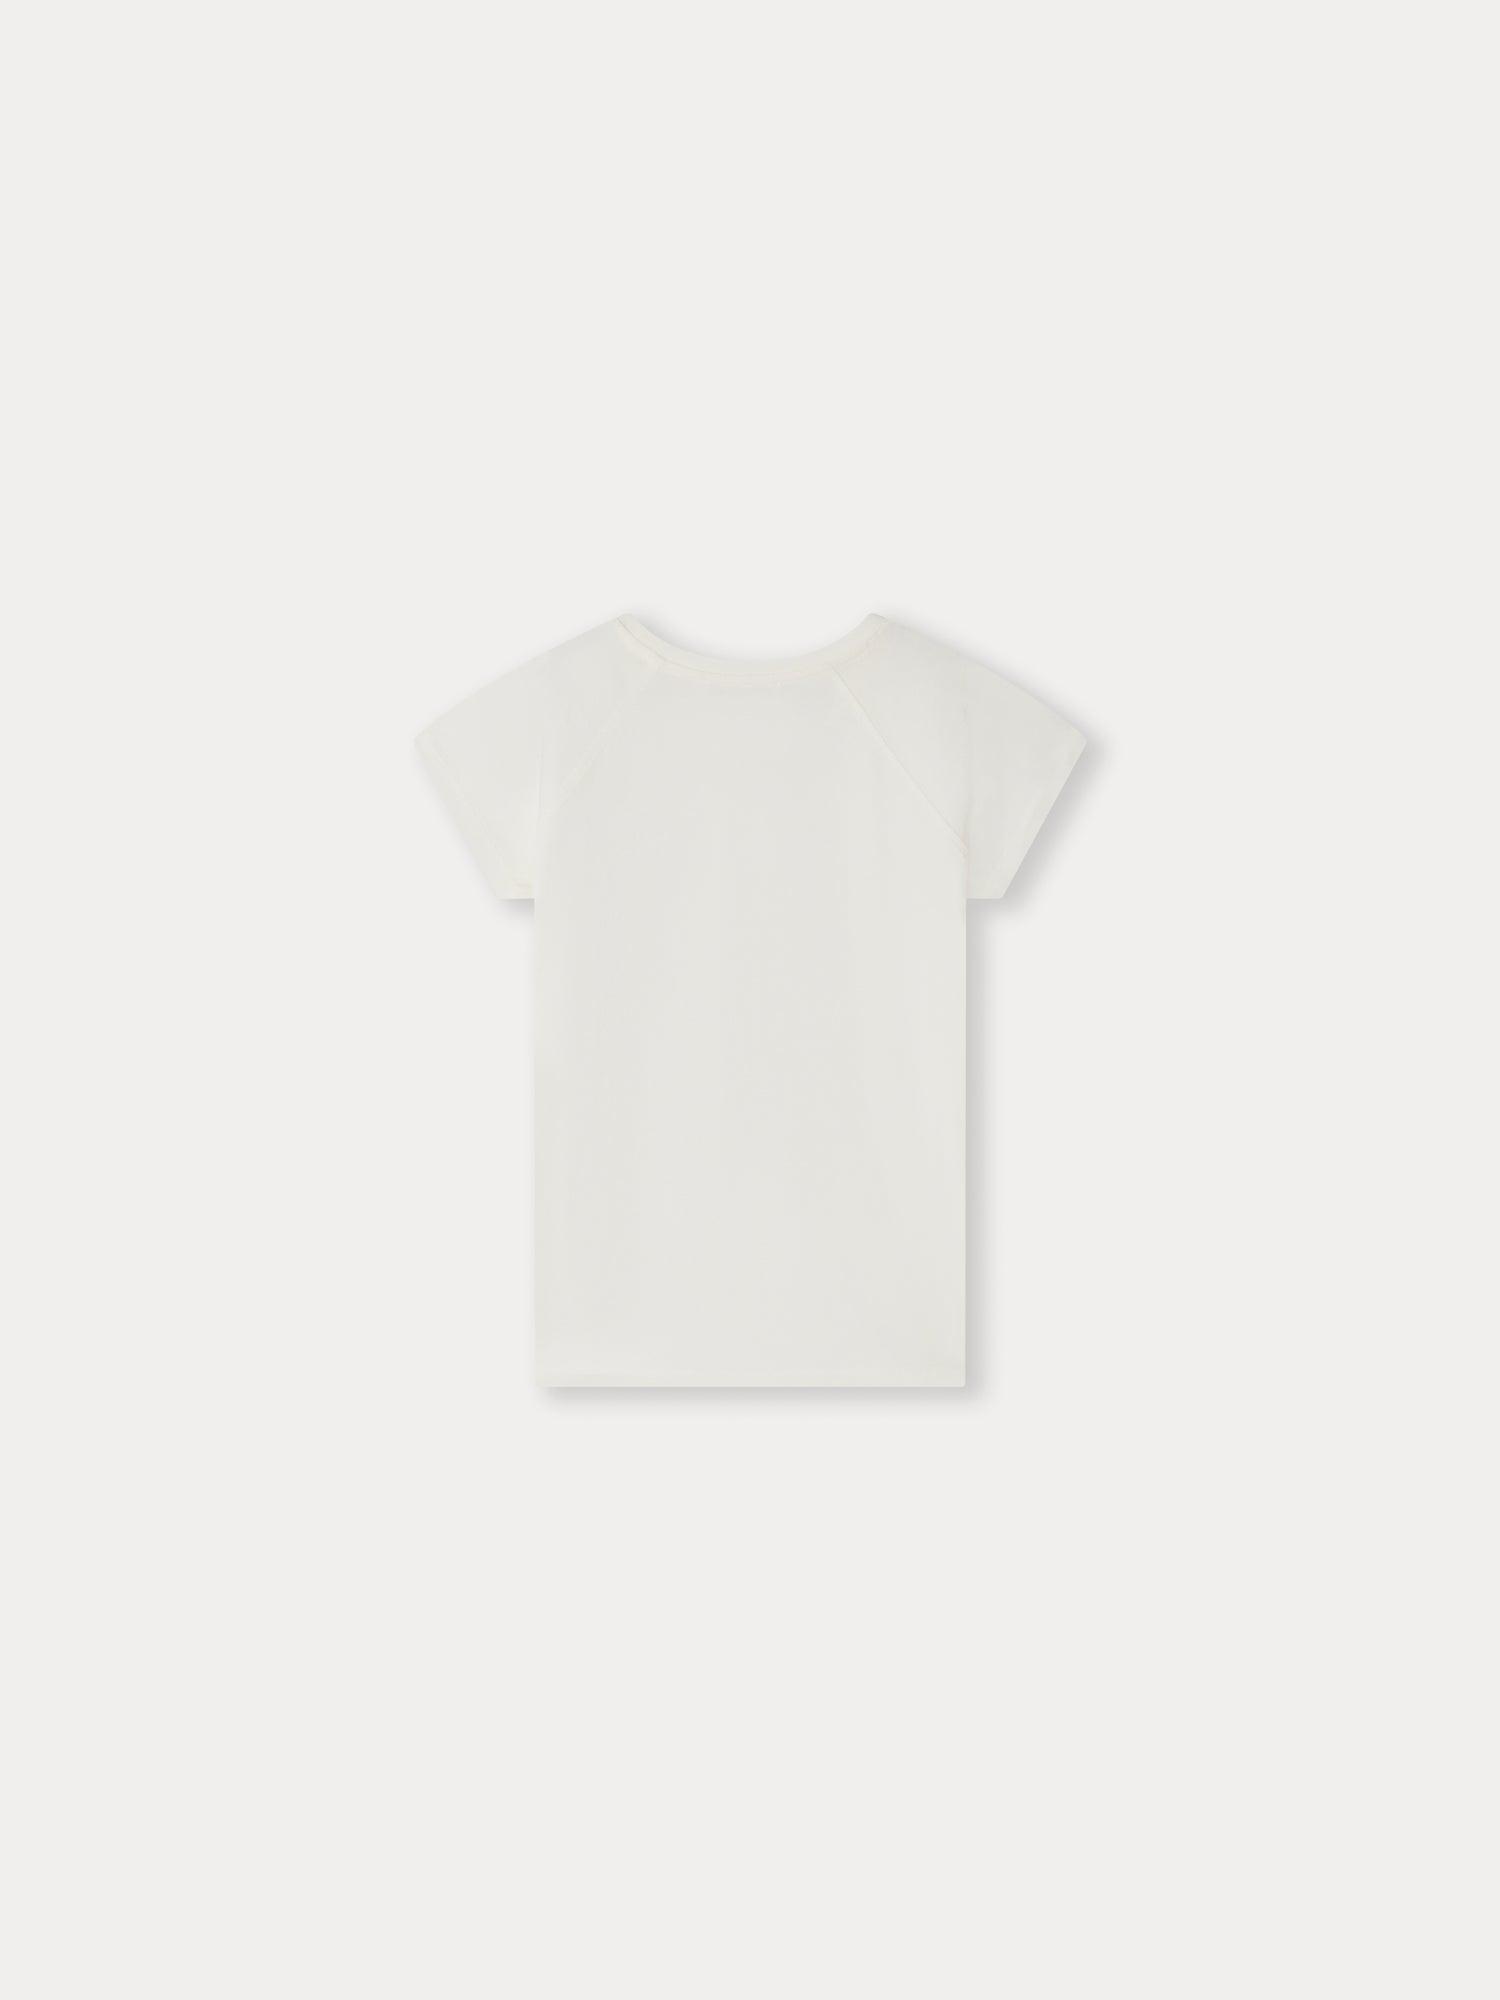 Alcala T-Shirt upb ivory • Bonpoint